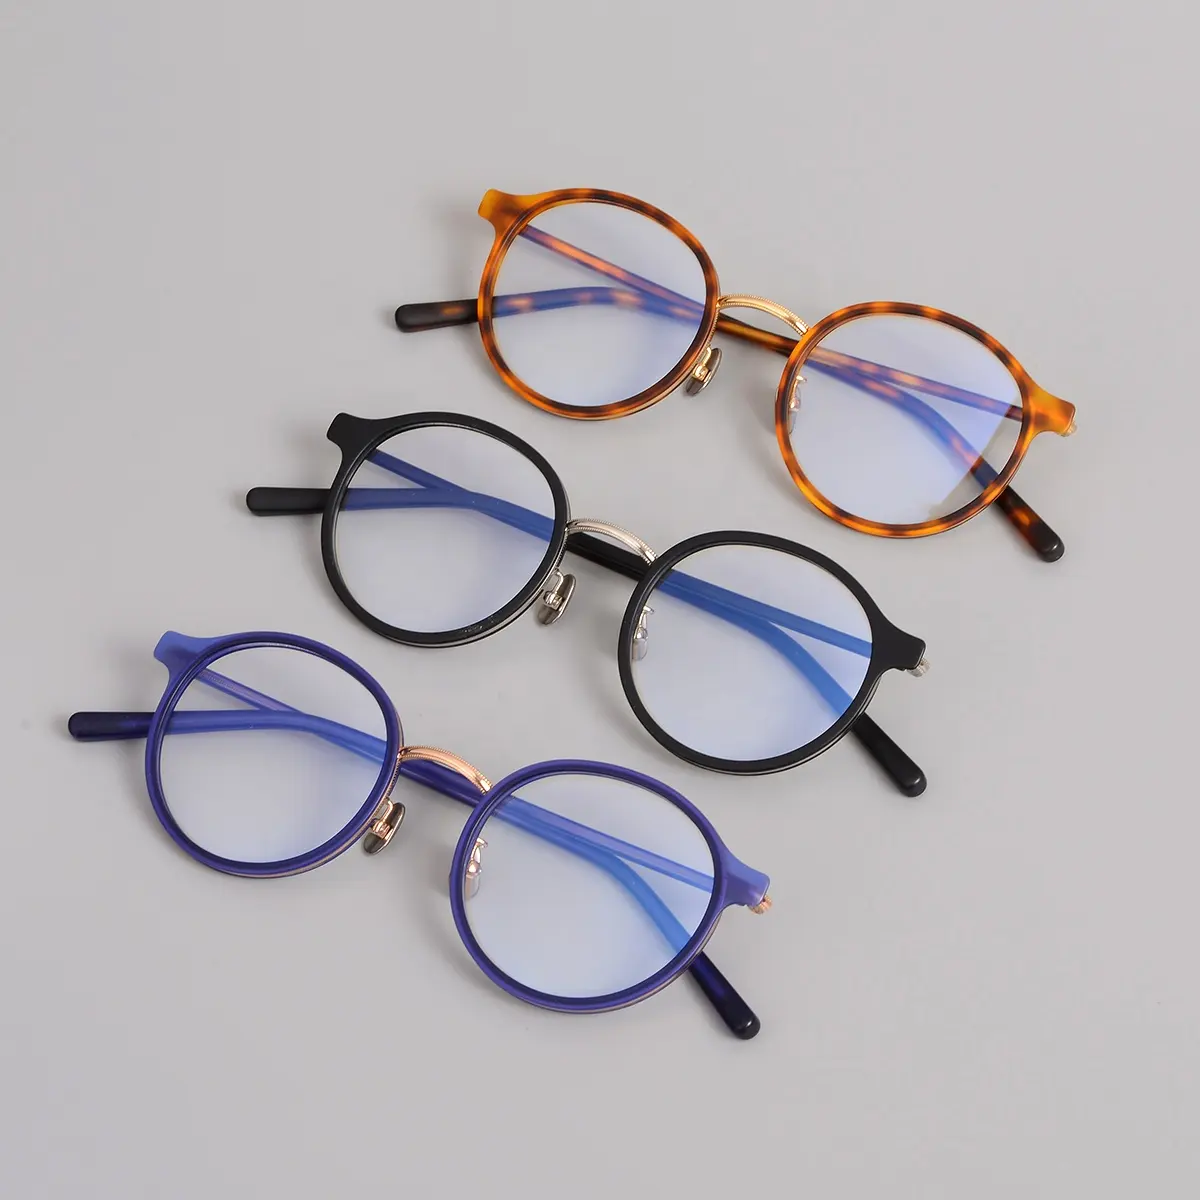 โรงงานสต็อกแว่นตาที่มีคุณภาพสูงแว่นตาแฟชั่นรายการเดียวแว่นตามันสามารถสวมใส่ได้ทั้งชายและหญิง